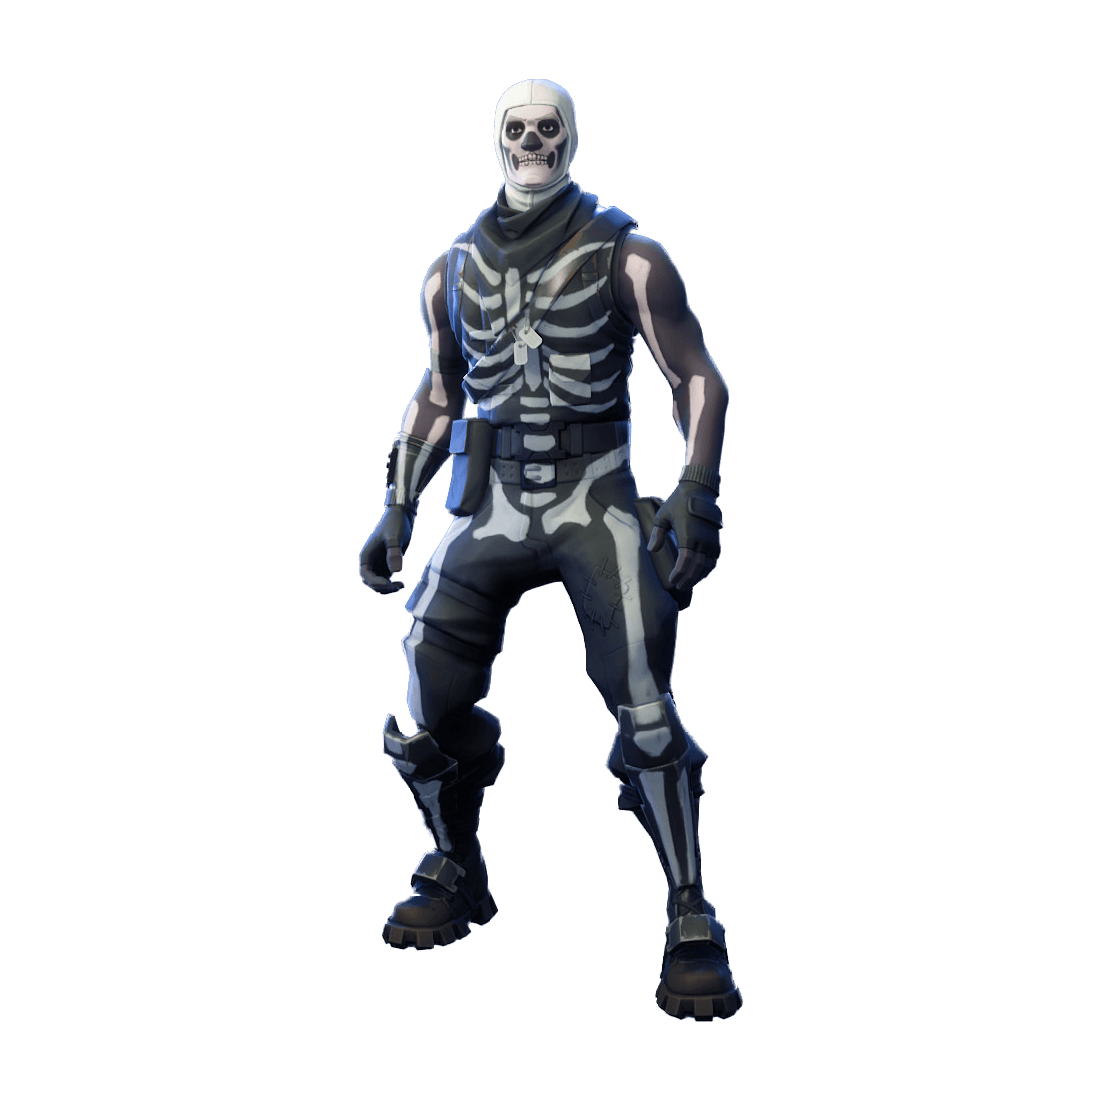 Skeleton Fortnite Soldier Wallpaper Free Skeleton